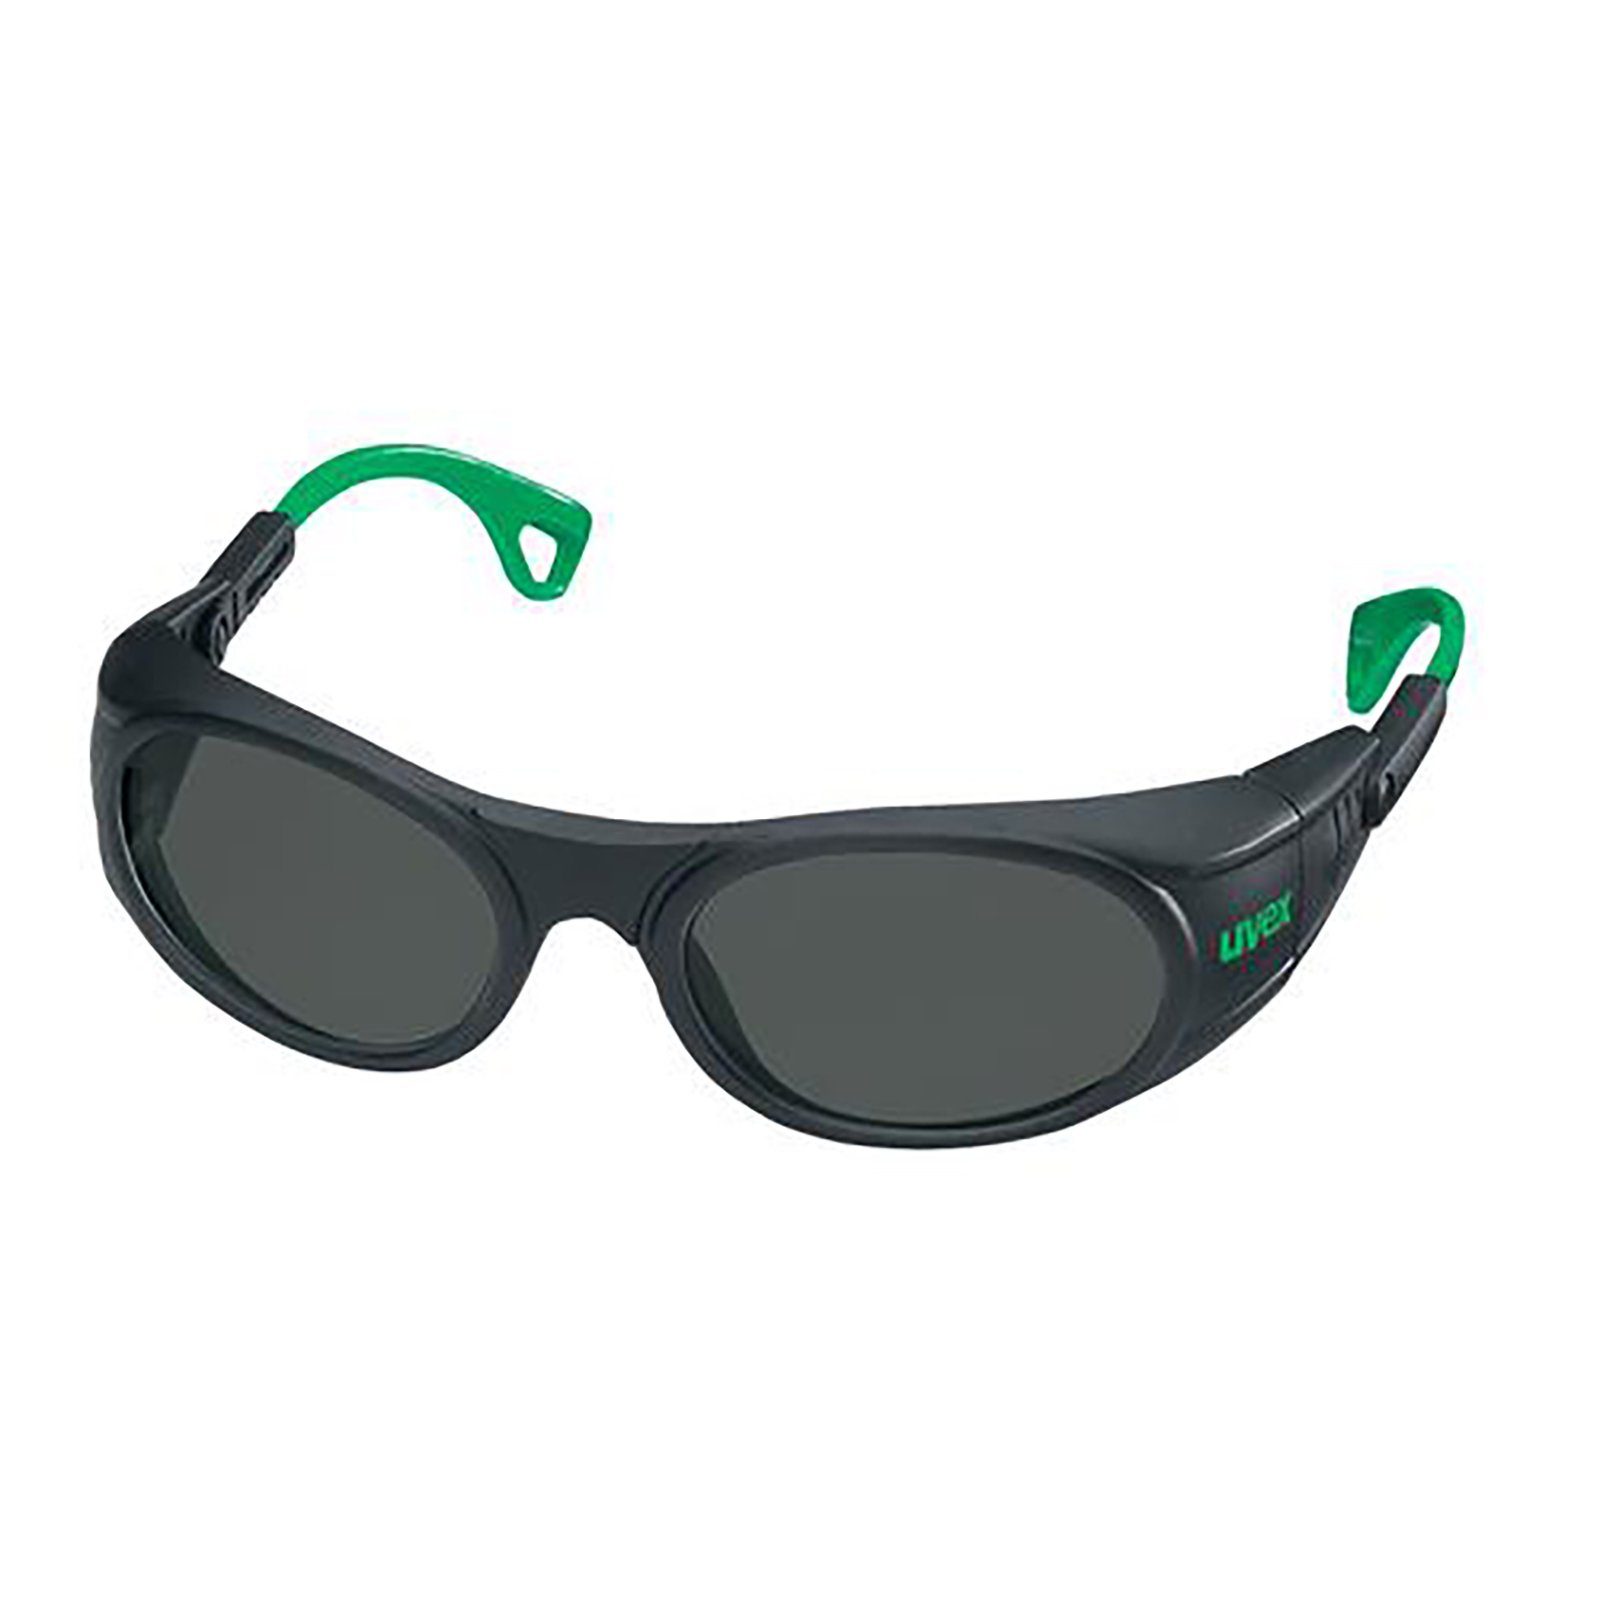 Uvex Arbeitsschutzbrille Bügelbrille 9116 grau Schweißerschutz 4 infradur